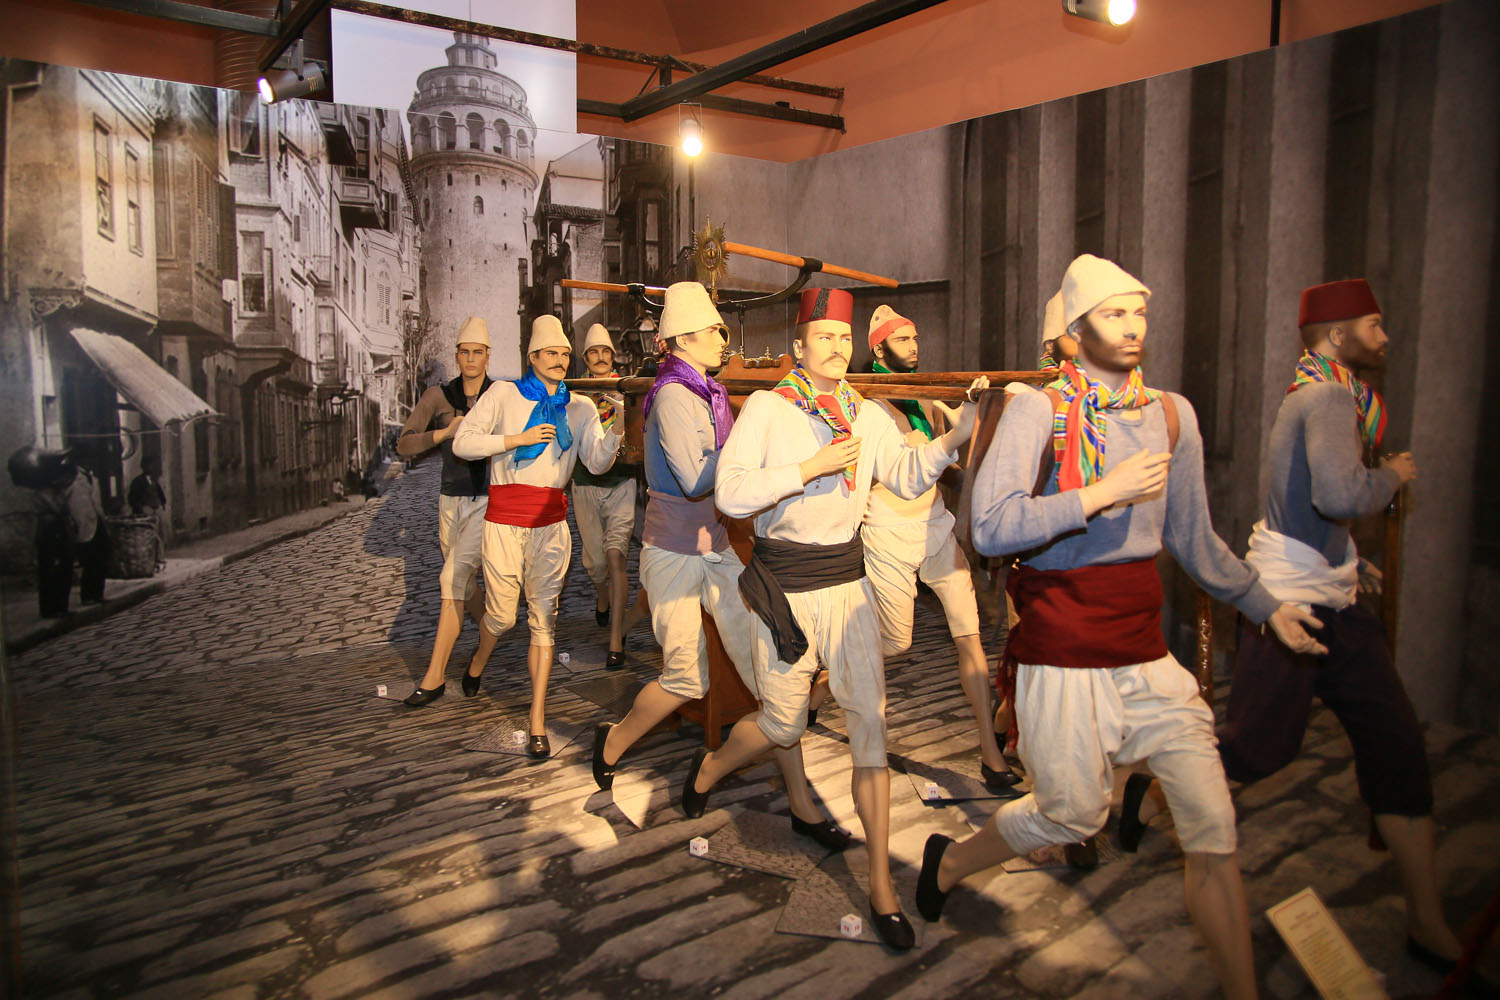 İtfaiye Müzesi - İstanbul İtfaiyesi